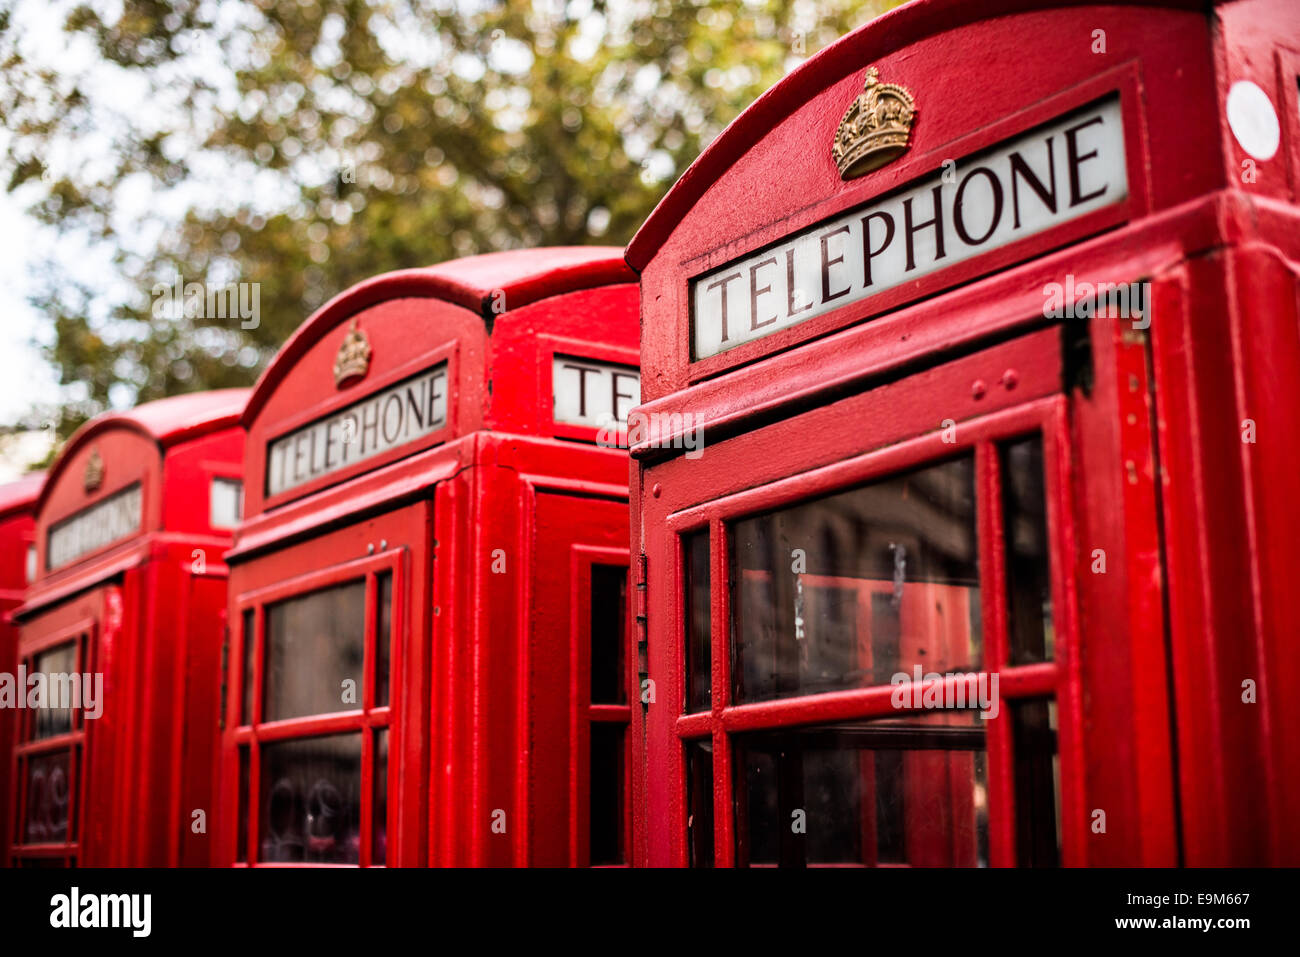 LONDON, UK - Die rote Telefonzelle hat ein Symbol Symbol von Großbritannien geworden. Trotz des Rückgangs der Nachfrage nach öffentlichen Telefonen, viele der Boxen können noch rund um das Vereinigte Königreich gesehen werden. Stockfoto